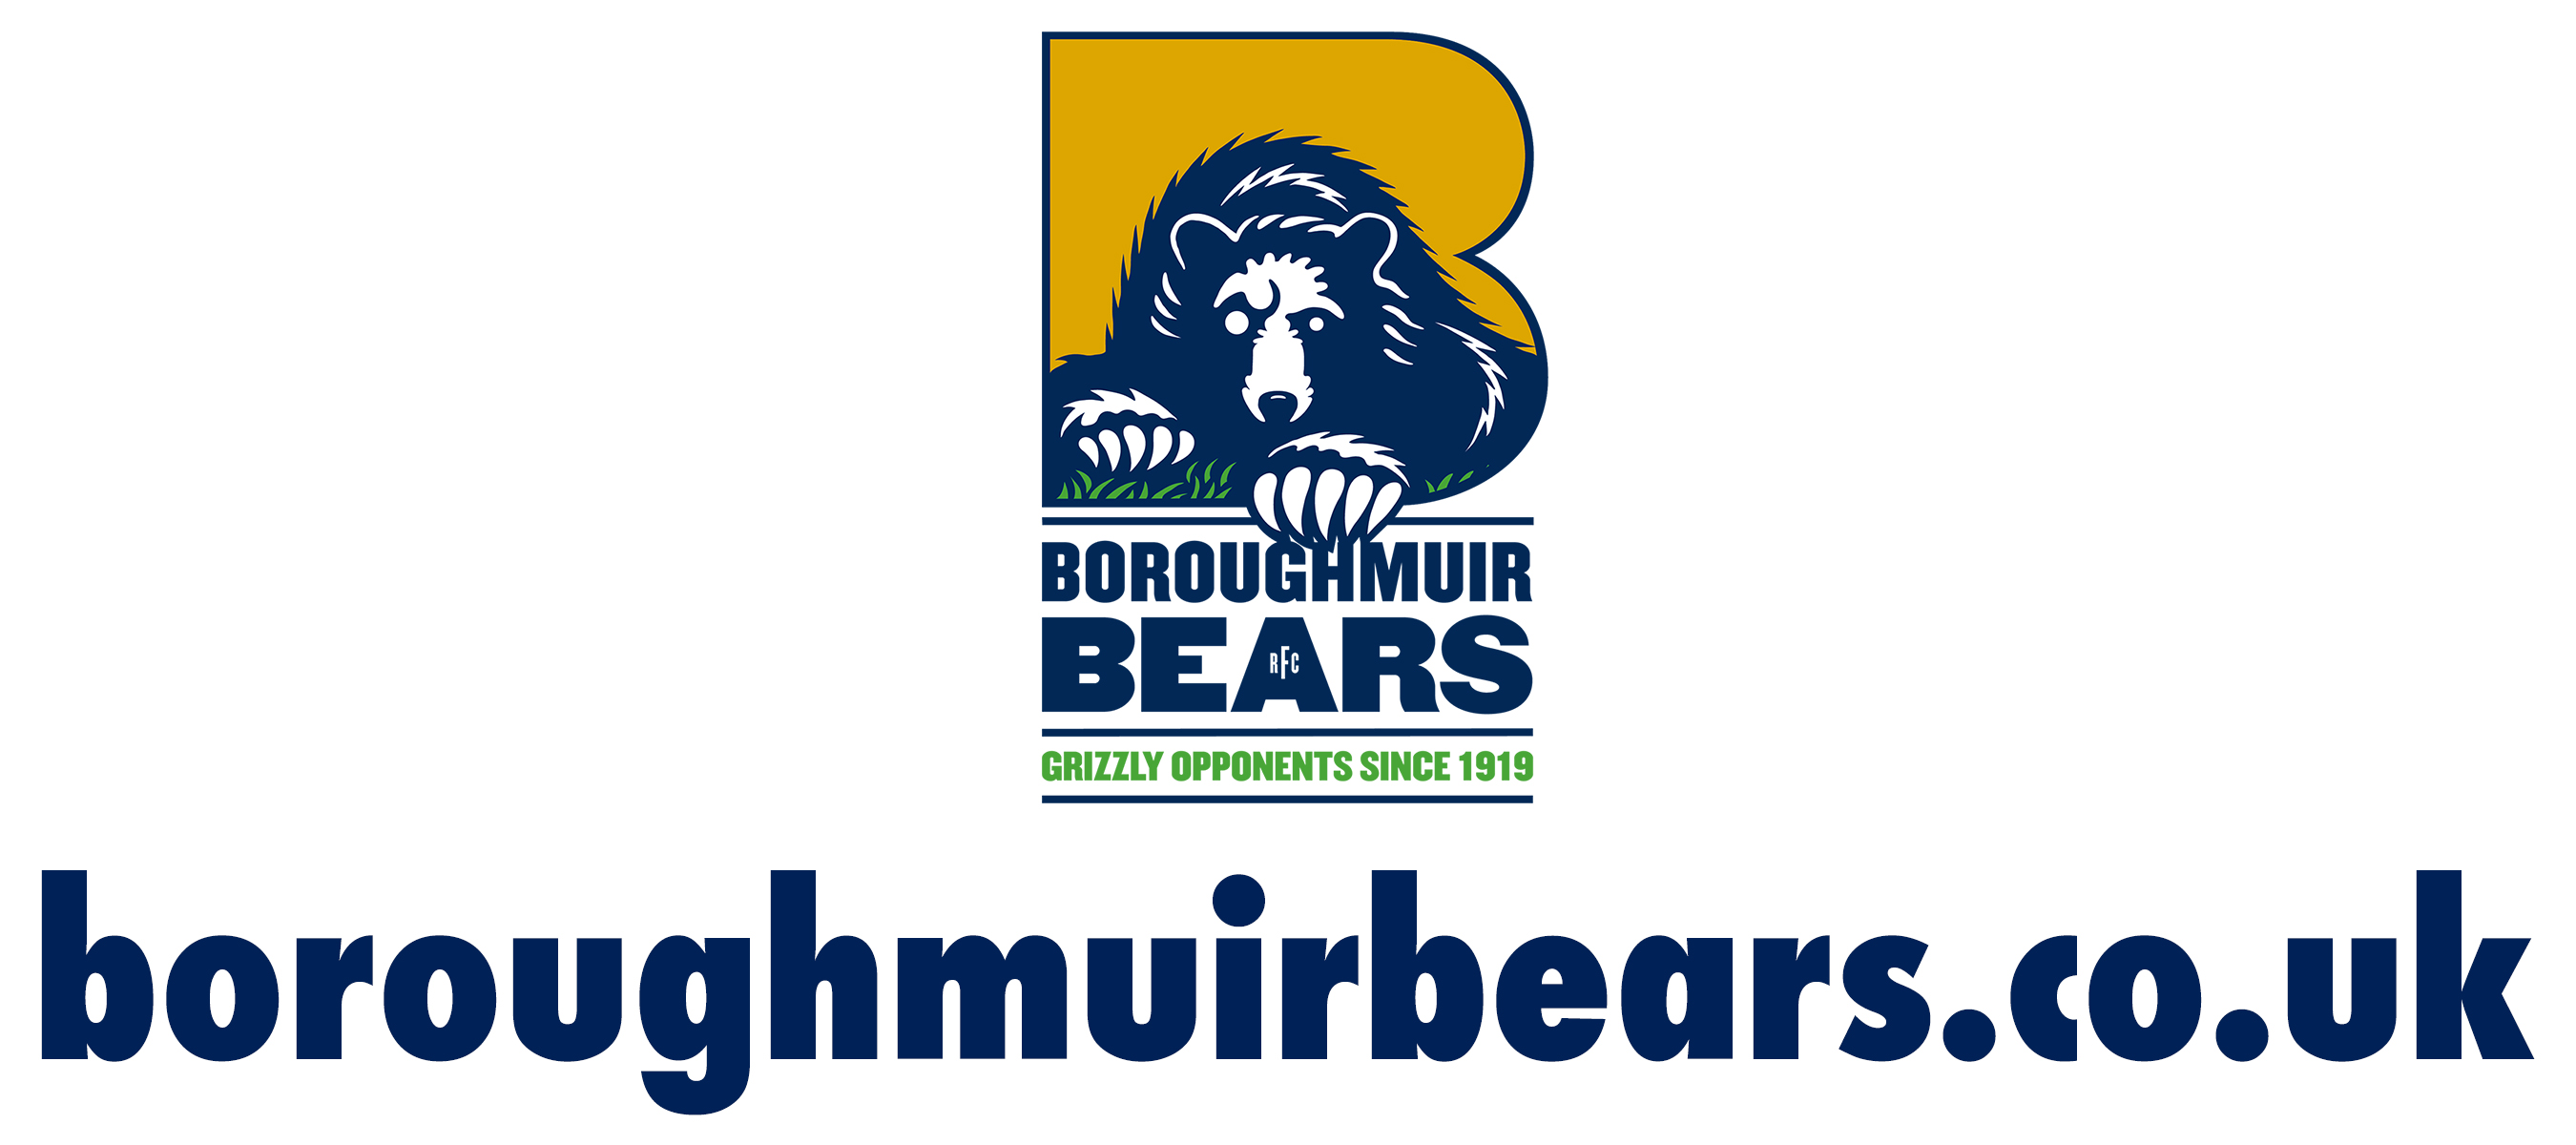 Situs Boroughmuir Bears